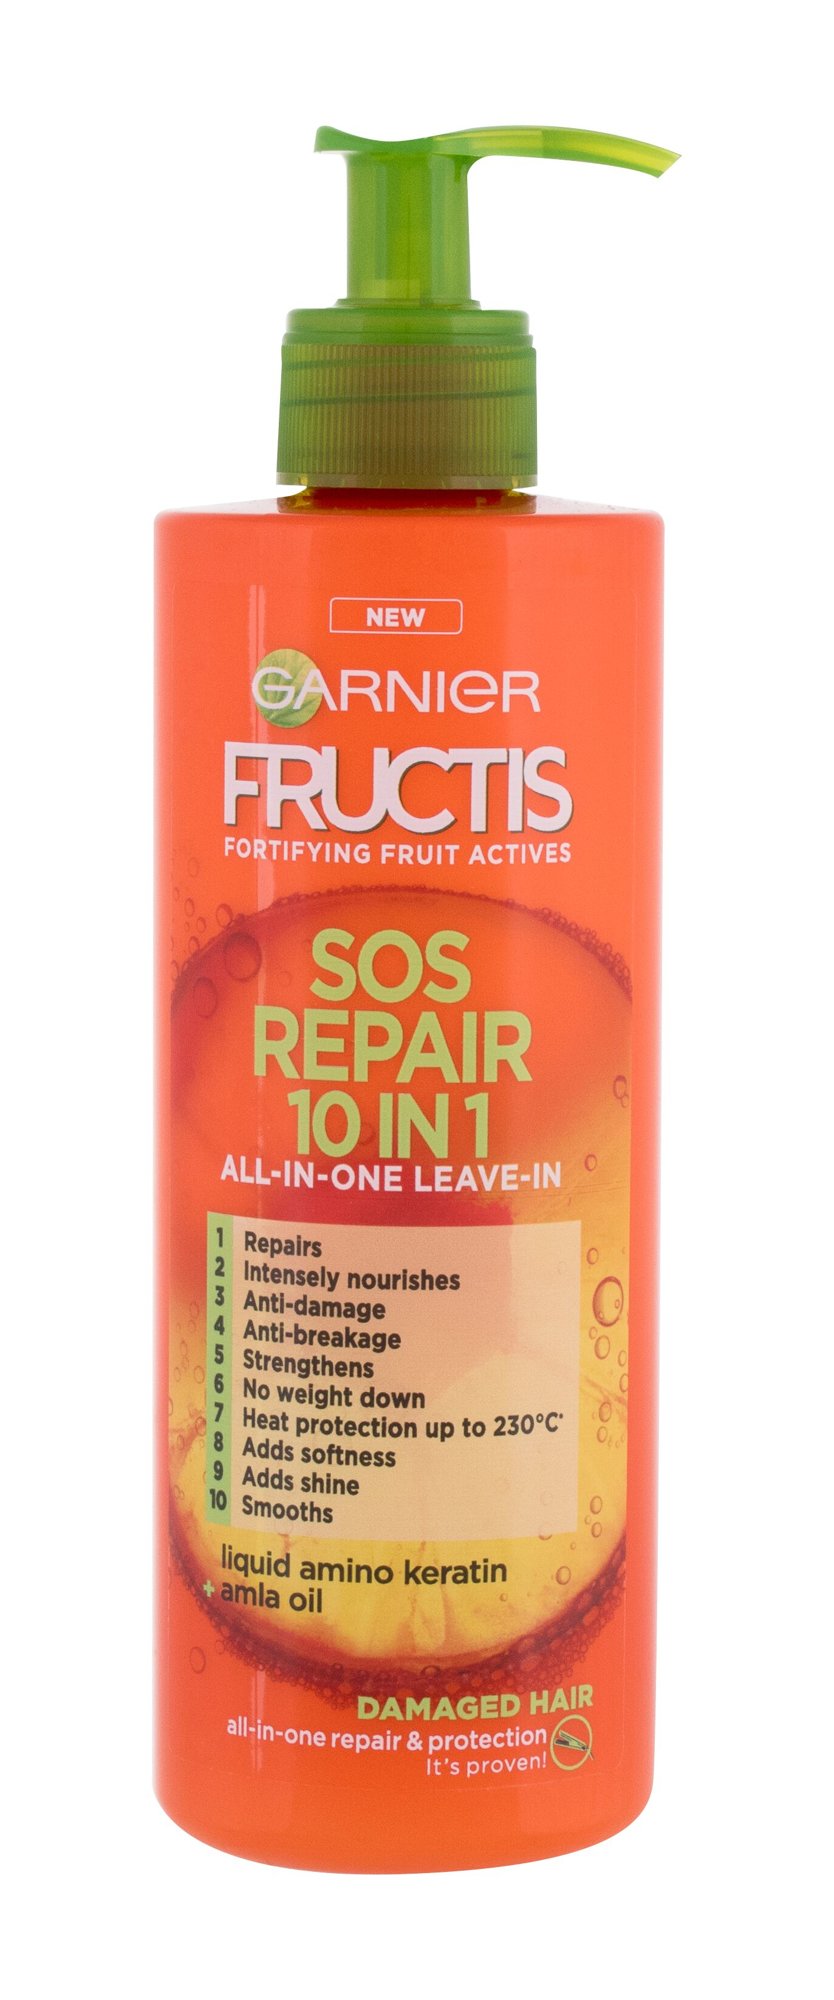 Garnier Fructis SOS Repair 10 IN 1 plaukų serumas